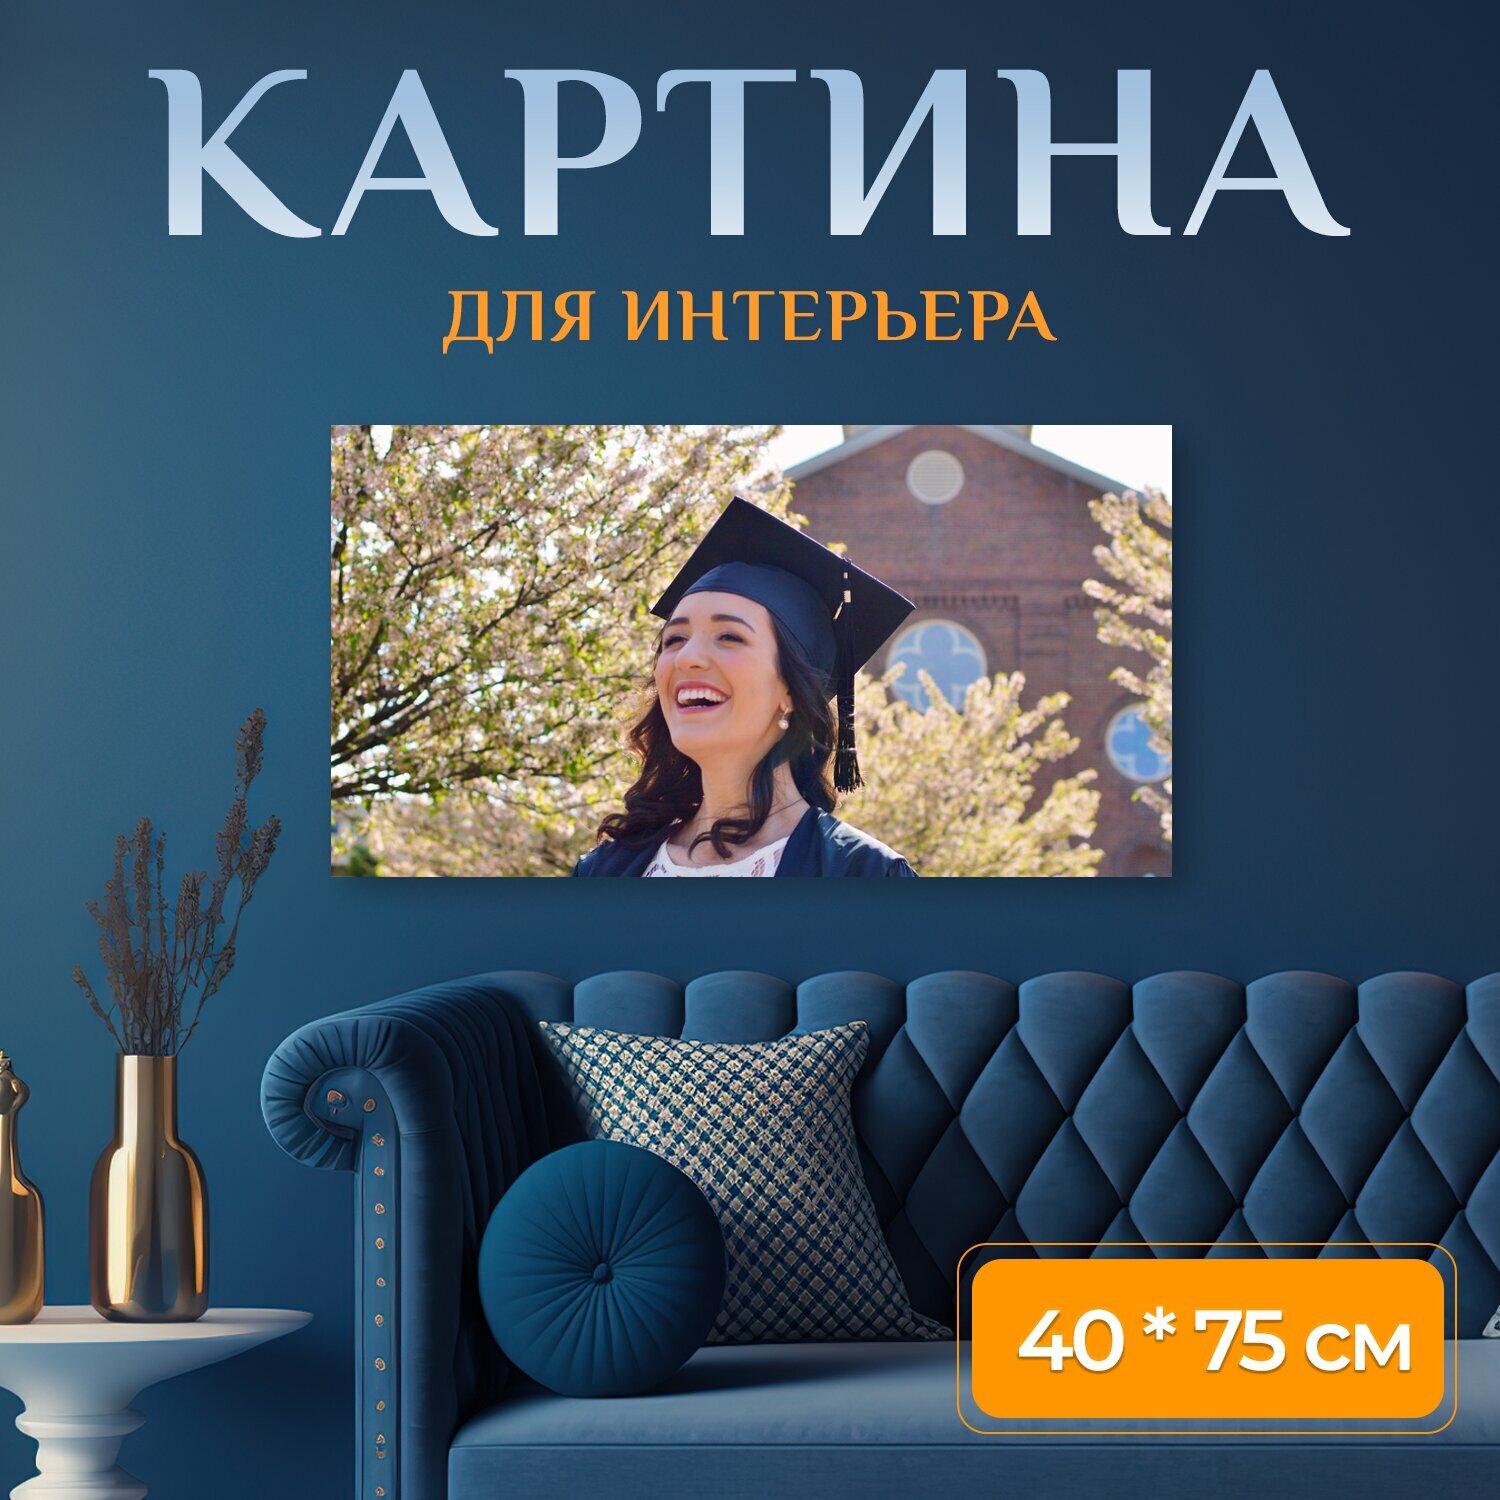 Картина на холсте "Выпускной, выпускник, образование" на подрамнике 75х40 см. для интерьера